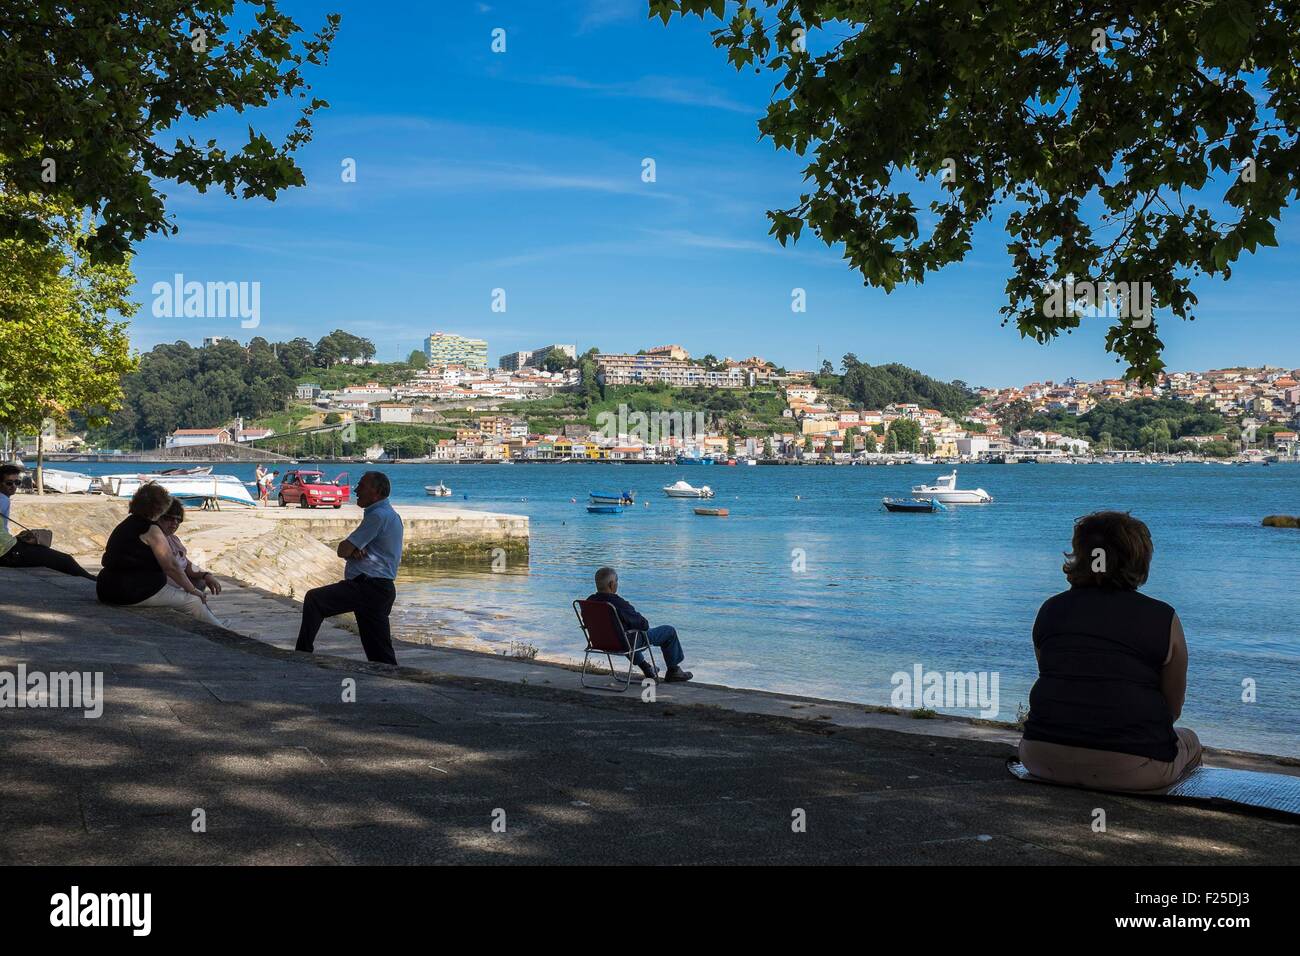 Portugal, North region, Porto, Douro river estuary, Afurada fishing village in the background Stock Photo